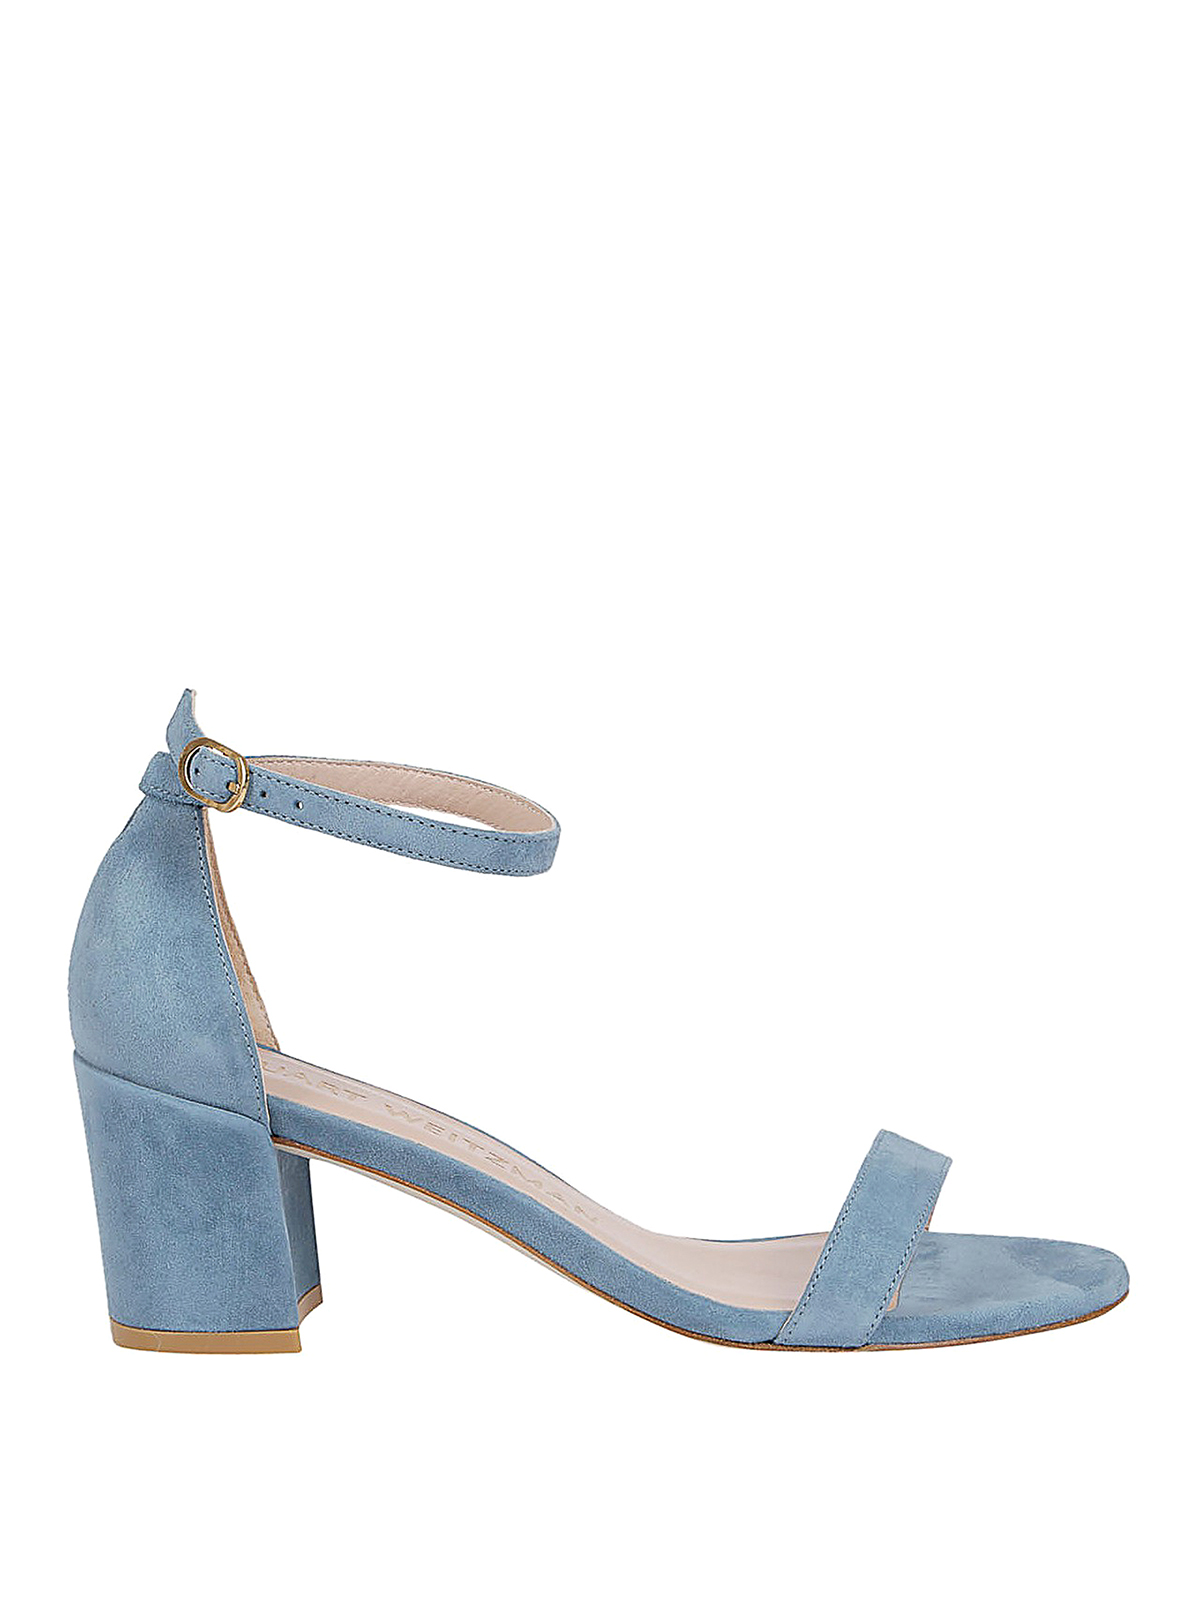 Sandals Stuart Weitzman - Simple light blue suede sandals ...